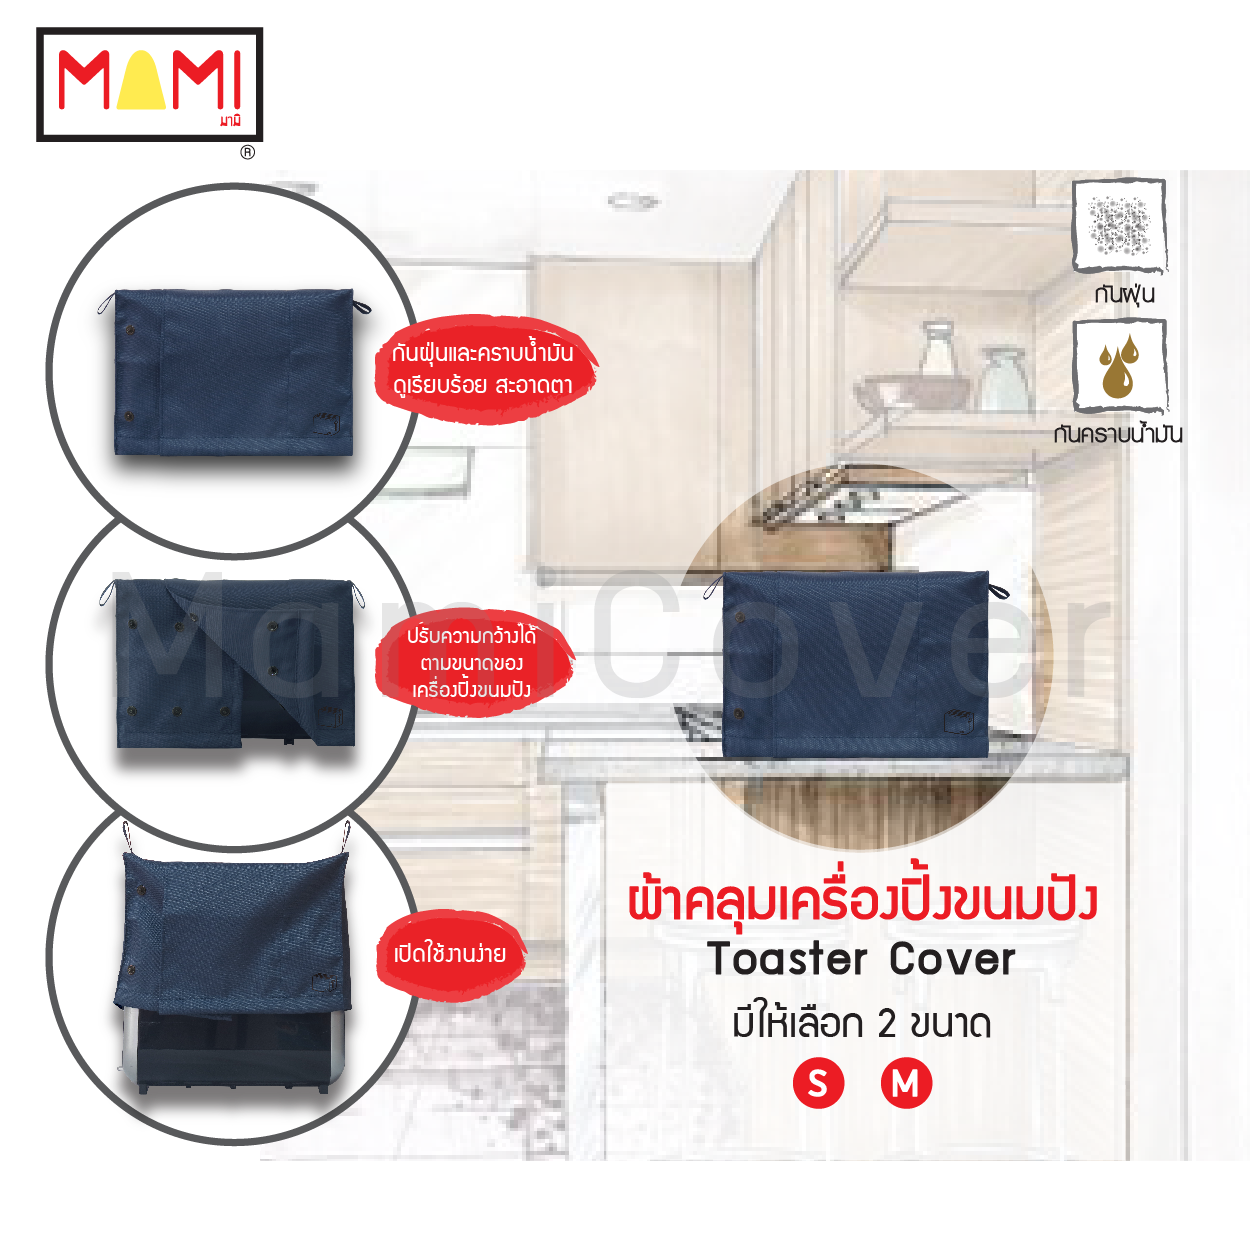 ผ้าคลุมเครื่องปิ้งขนมปัง Mami กันฝุ่น กันคราบน้ำมัน Toaster Cover